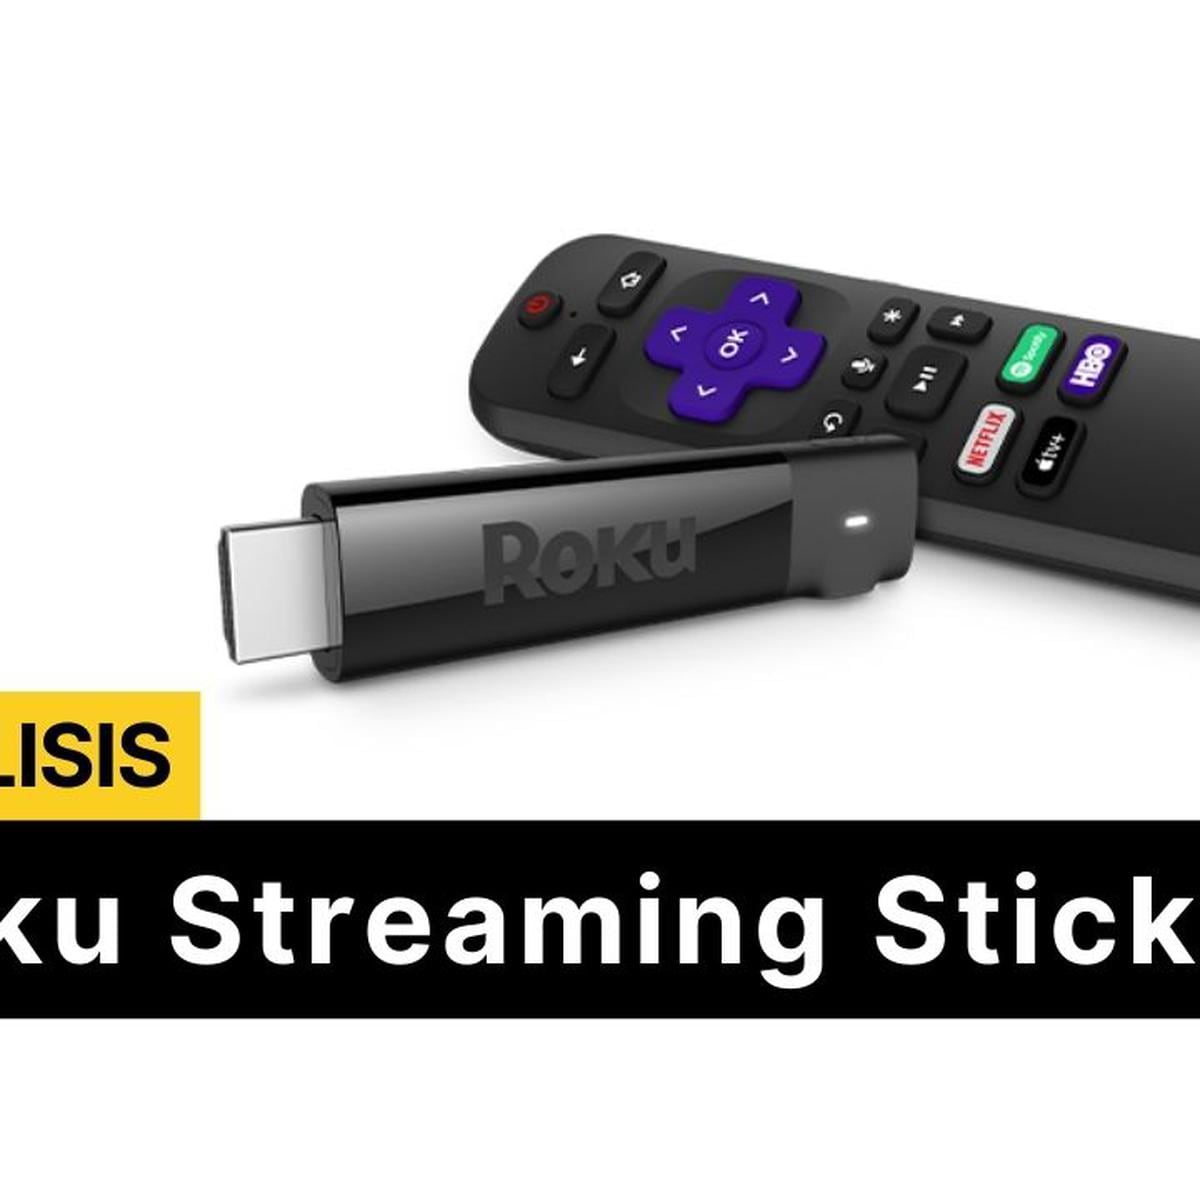 Roku Streaming Stick 4K presntado: diseño, características y precio